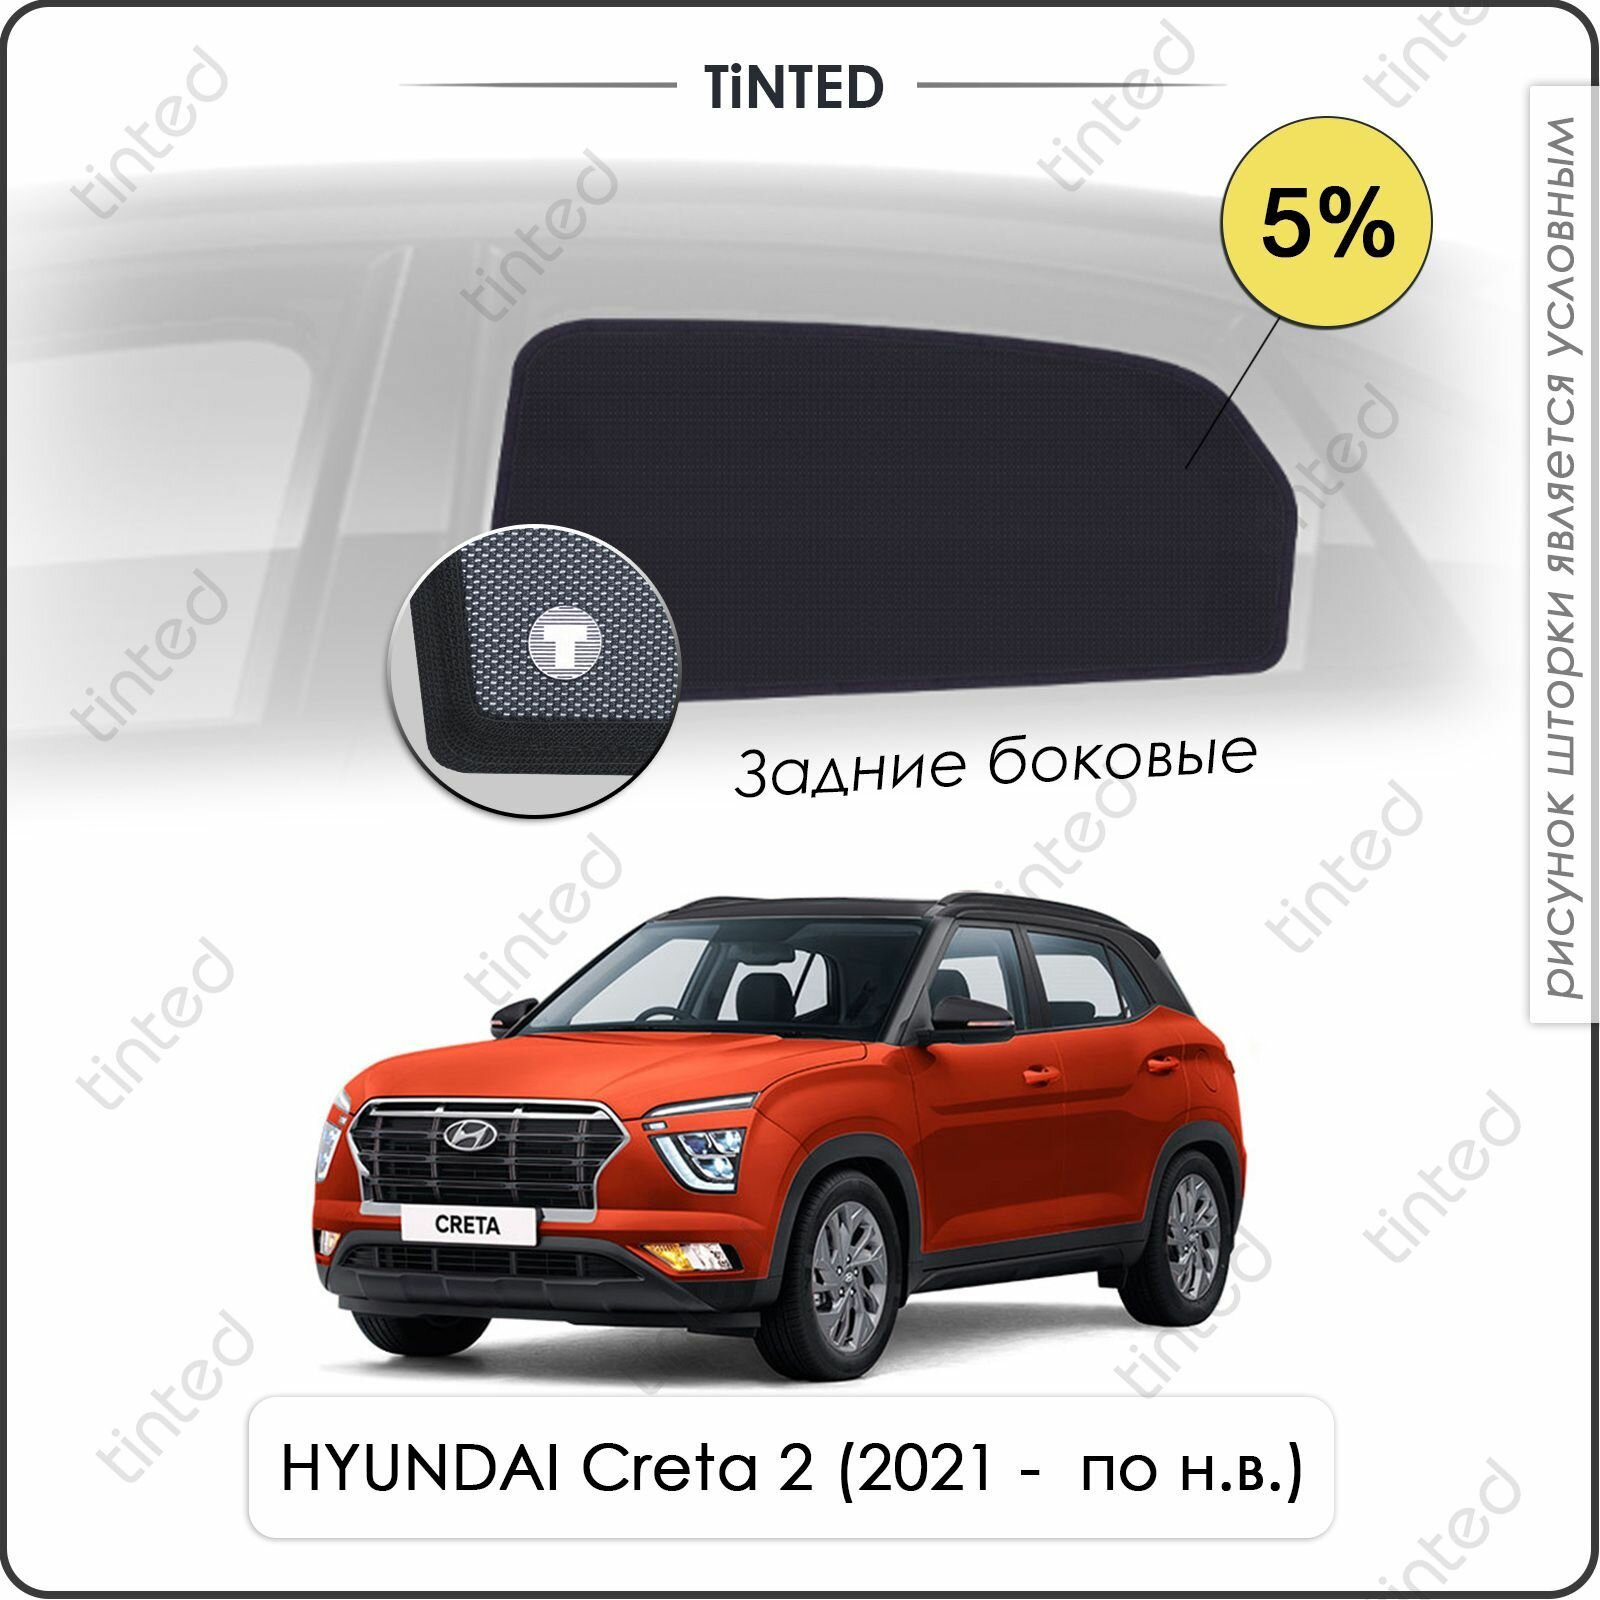 Шторки на автомобиль солнцезащитные HYUNDAI Creta 2 Кроссовер 5дв. (2021 - по н. в.) на задние двери 5%, сетки от солнца в машину хёндай крета, Каркасные автошторки Premium